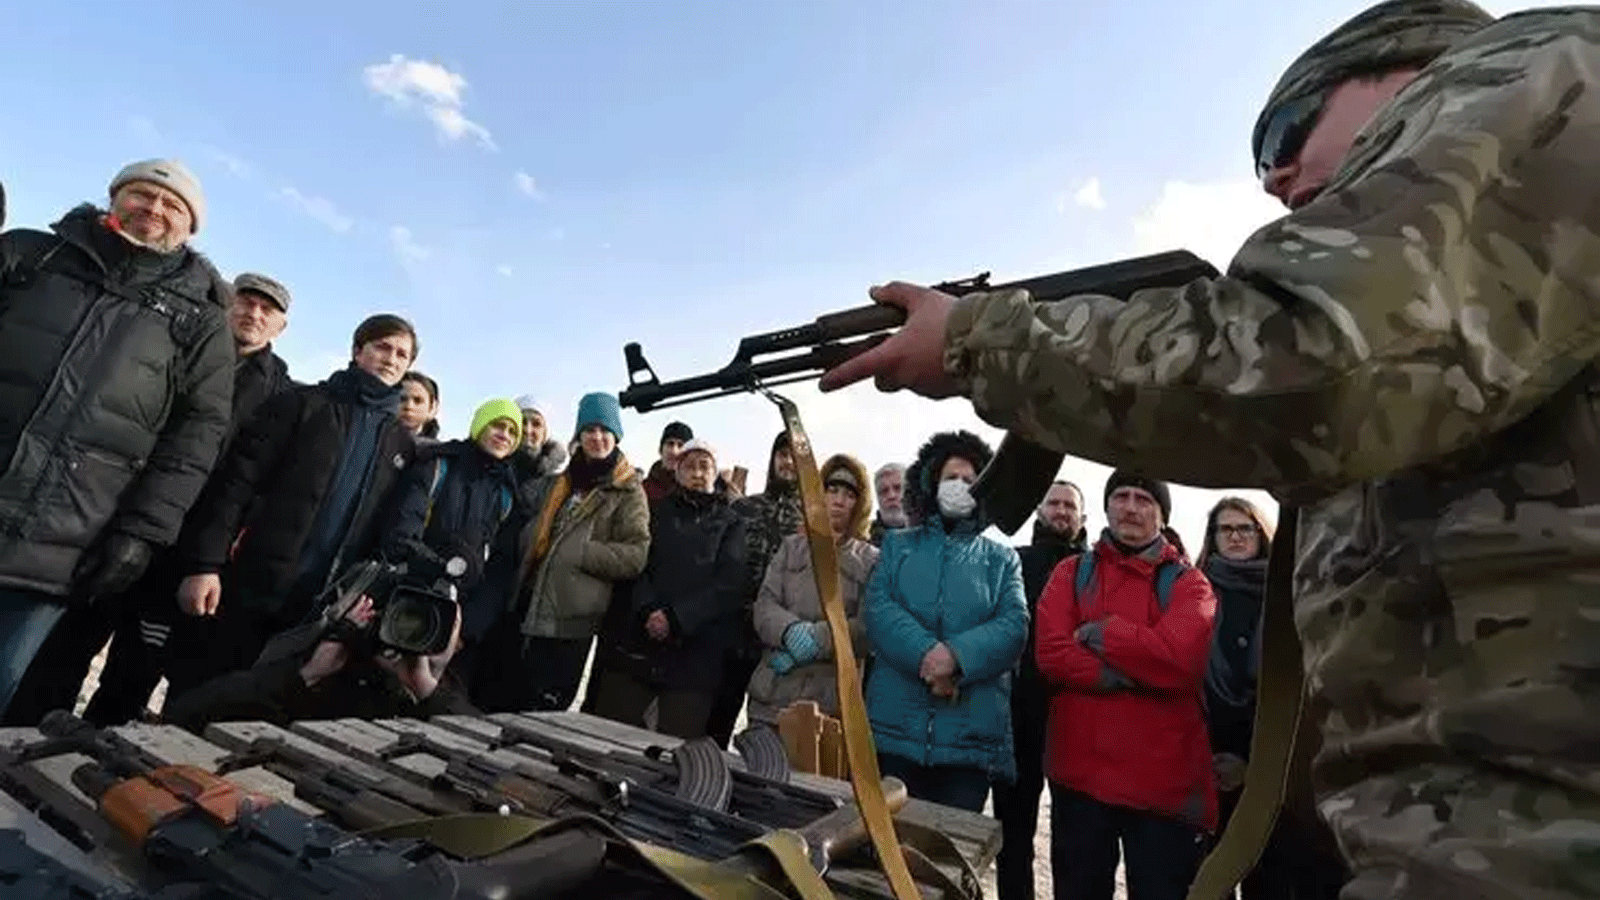 السكان يحضرون تدريبًا مفتوحًا للمدنيين من قبل قدامى المحاربين والمتطوعين الذين يقومون بتدريس التعامل مع الأسلحة الأساسية والإسعافات الأولية في كييف 